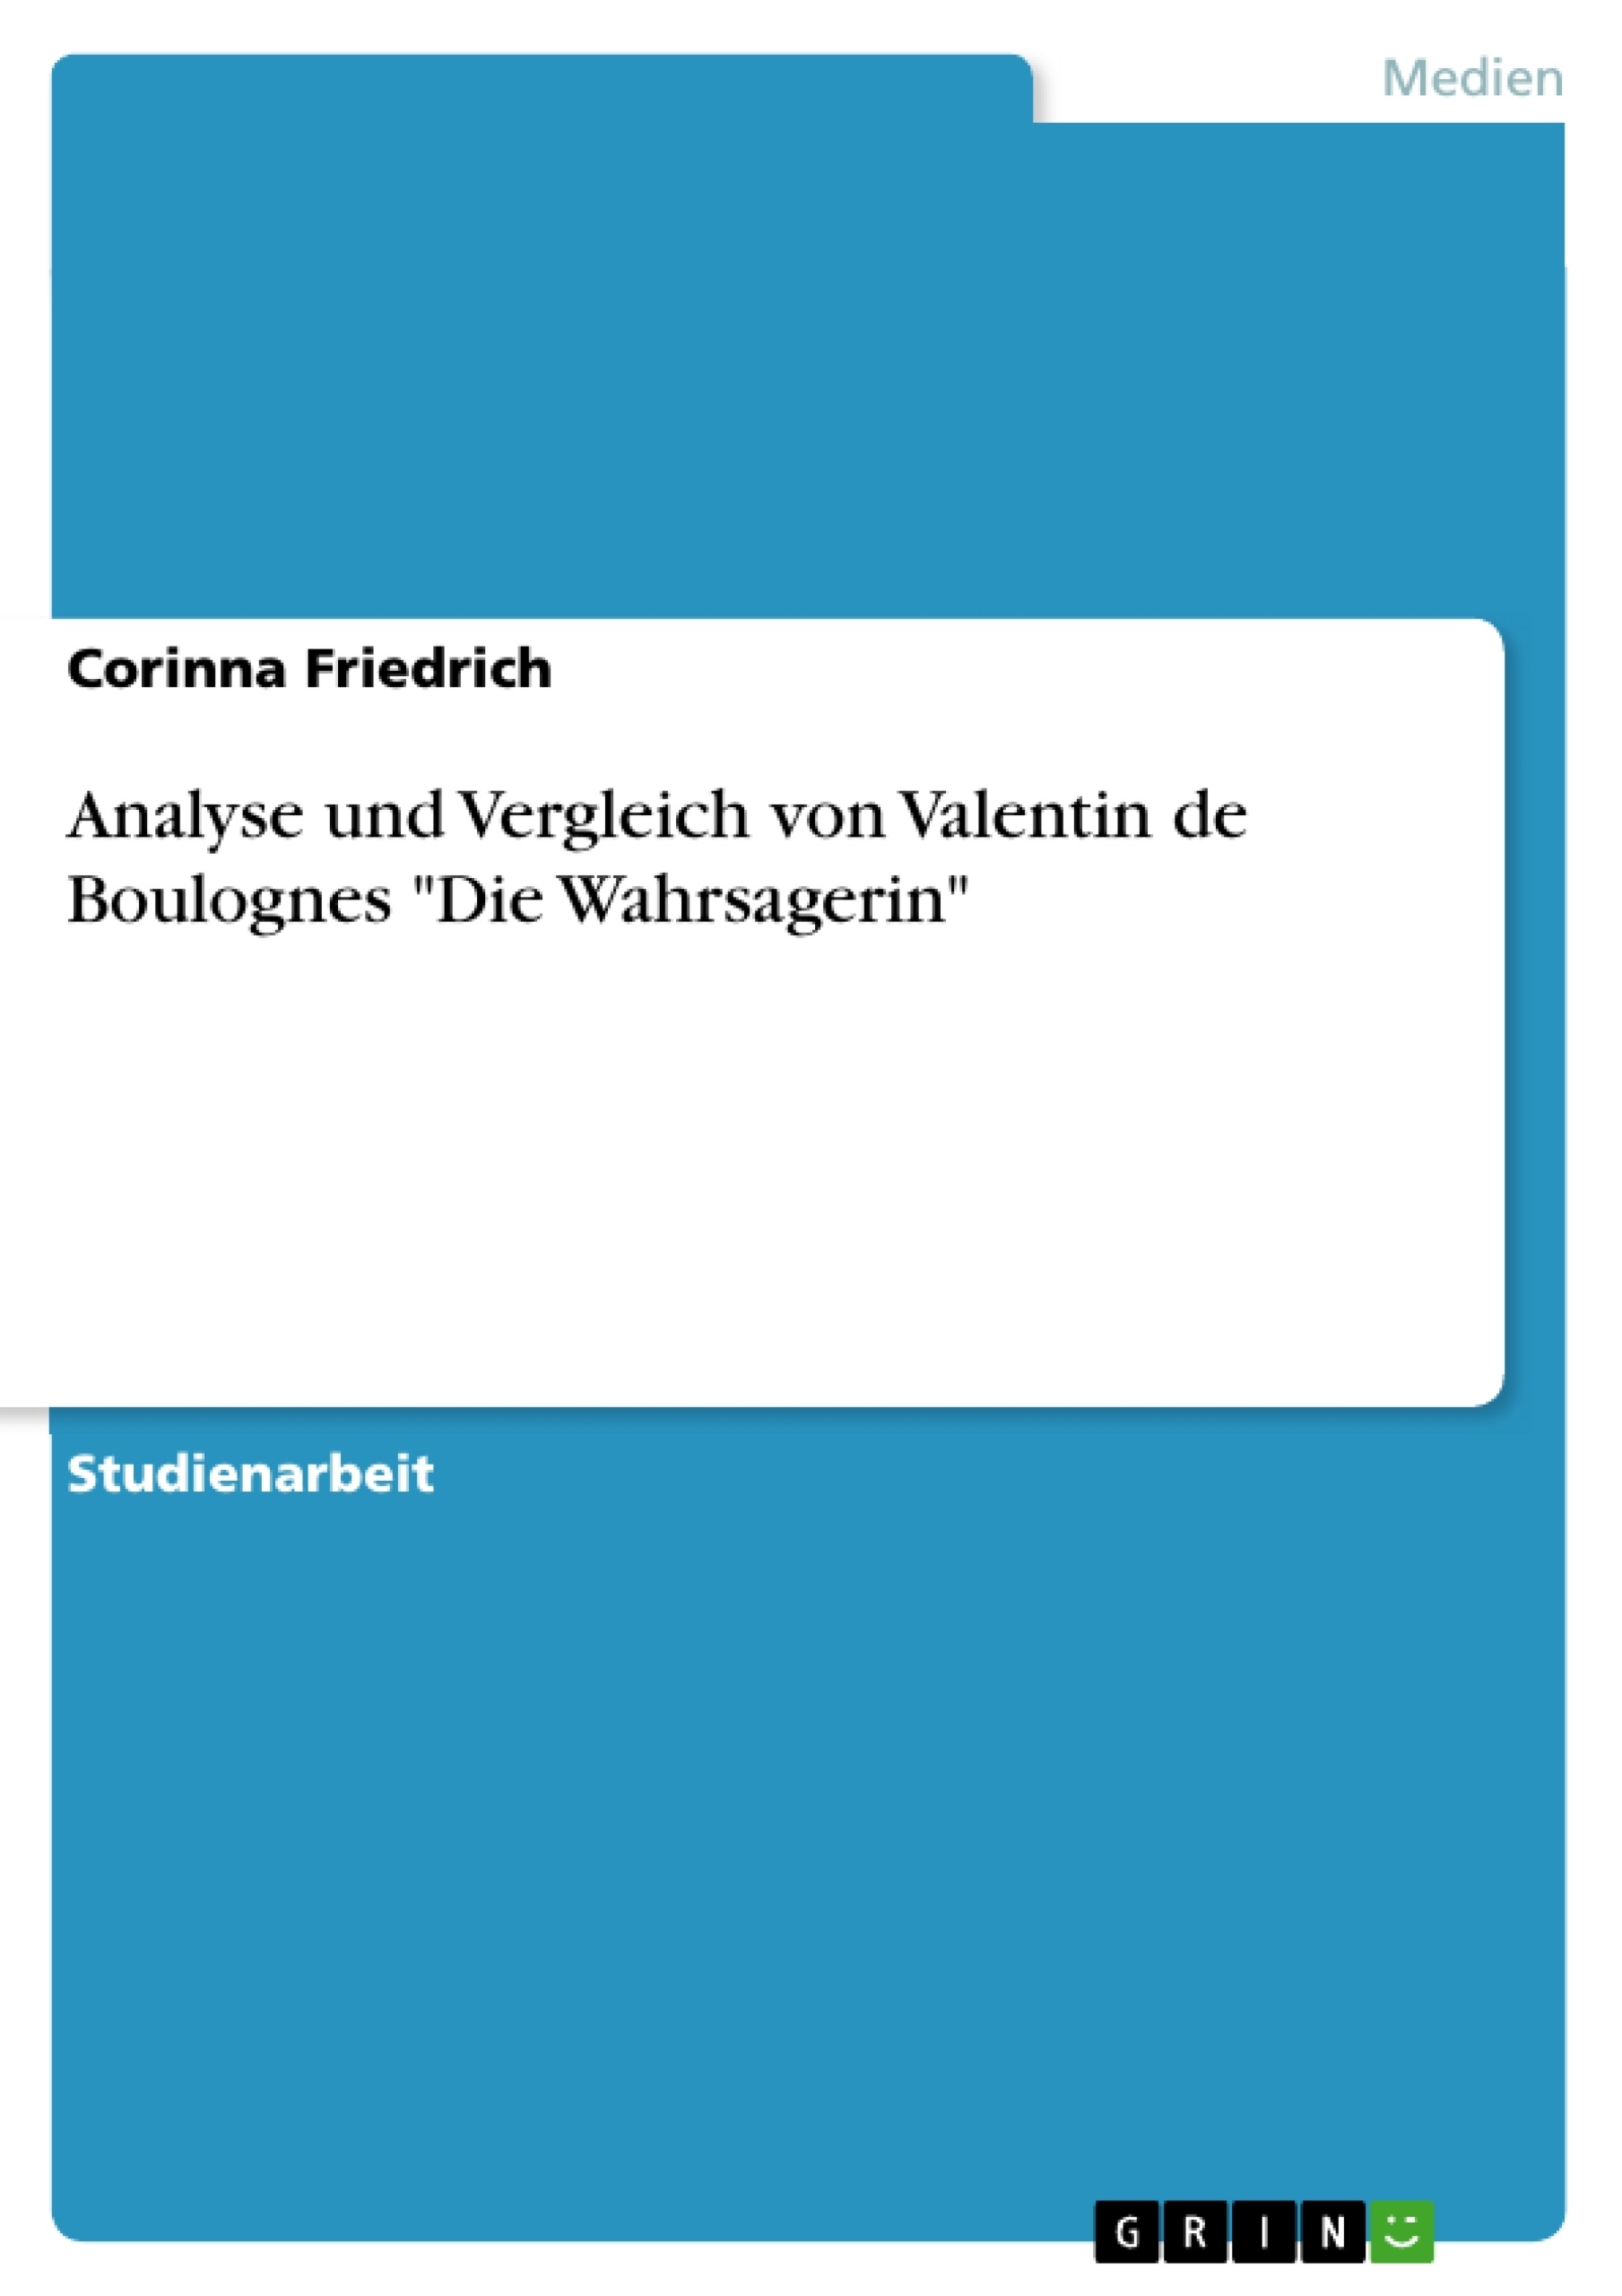 Título: Analyse und Vergleich von Valentin de Boulognes "Die Wahrsagerin"